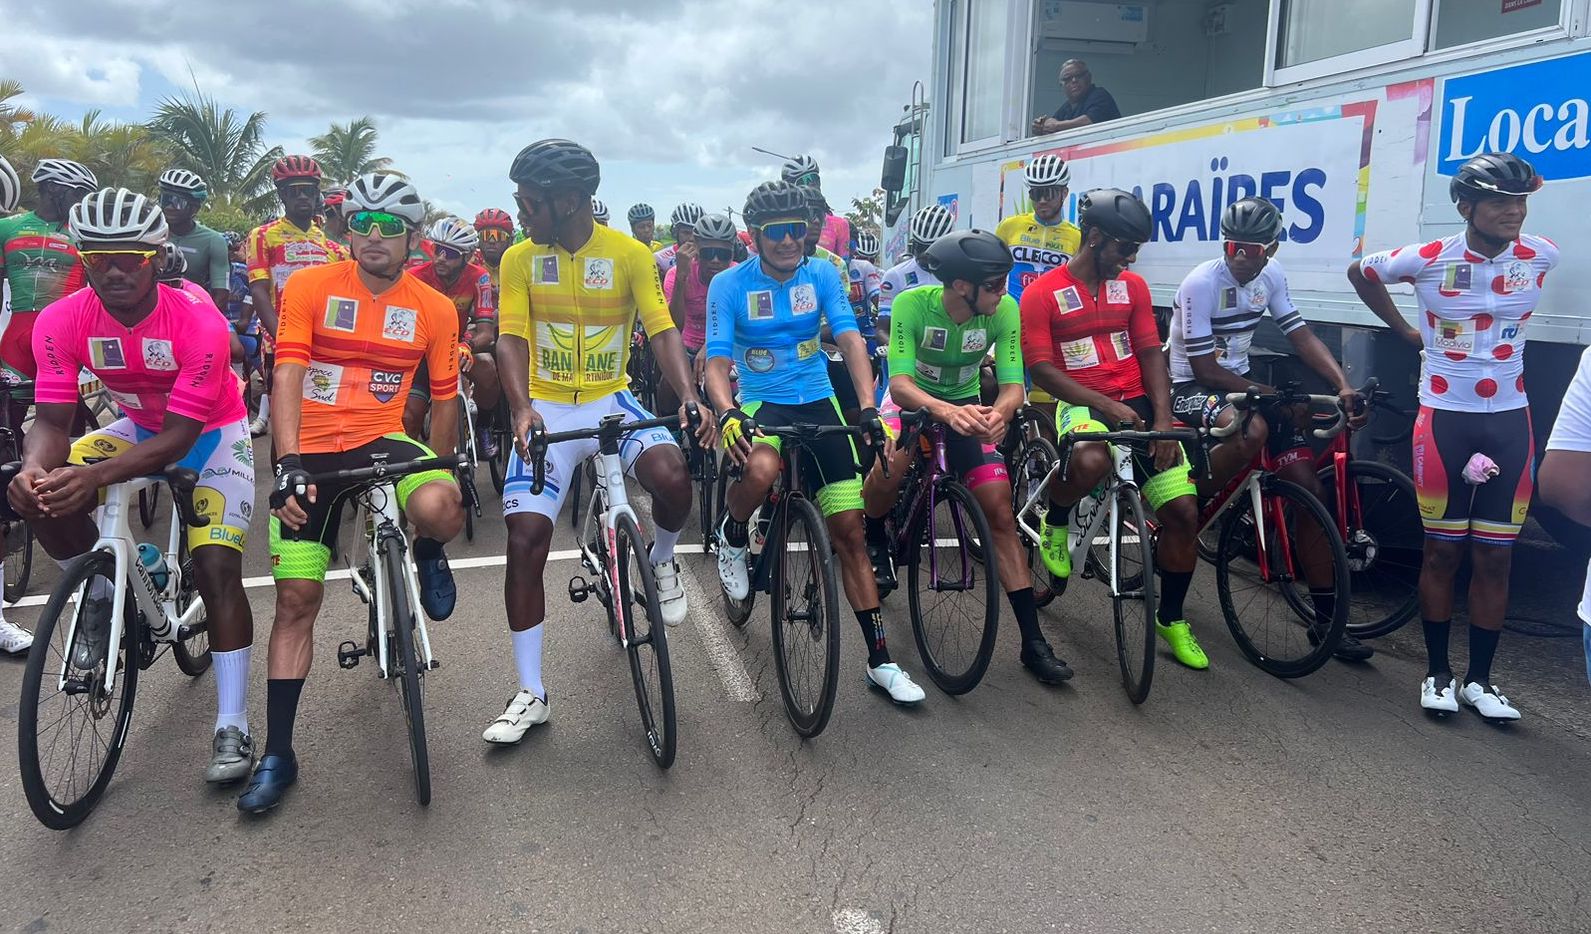     95 cyclistes au départ du 36ème Trophée de la Caraïbe à Ducos 

